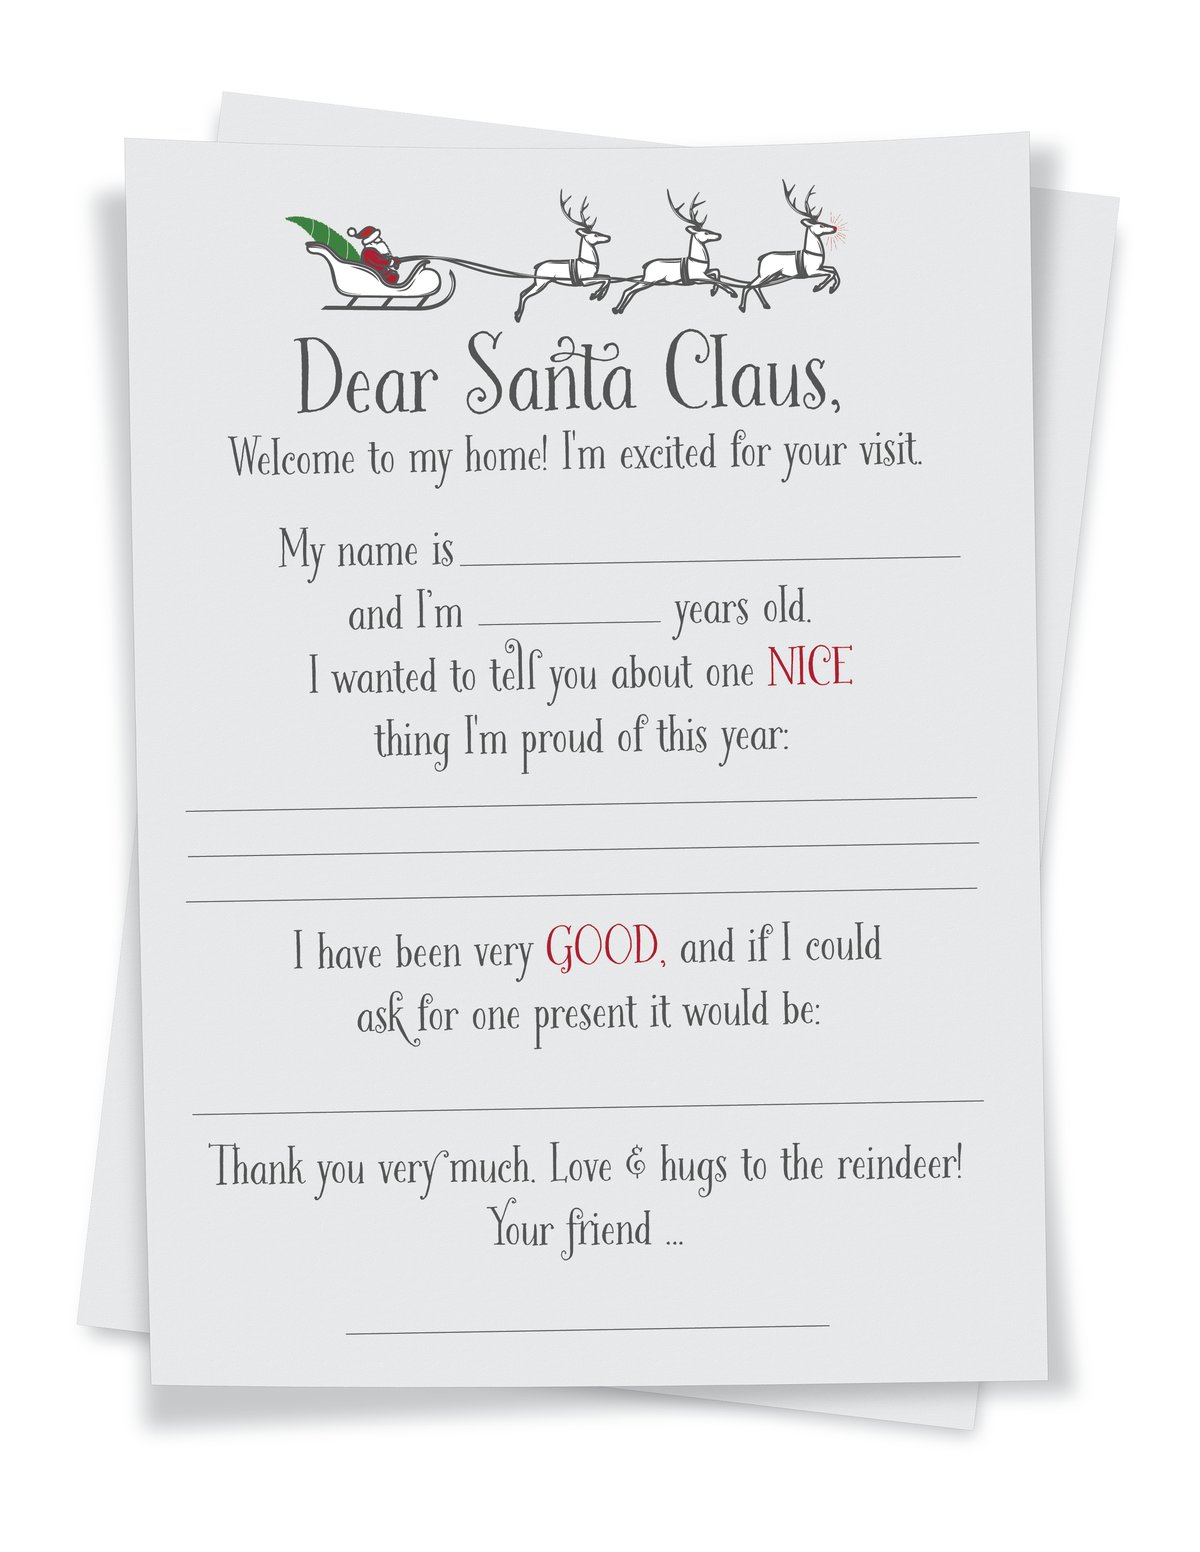 Write a Letter: Dear Santa Claus